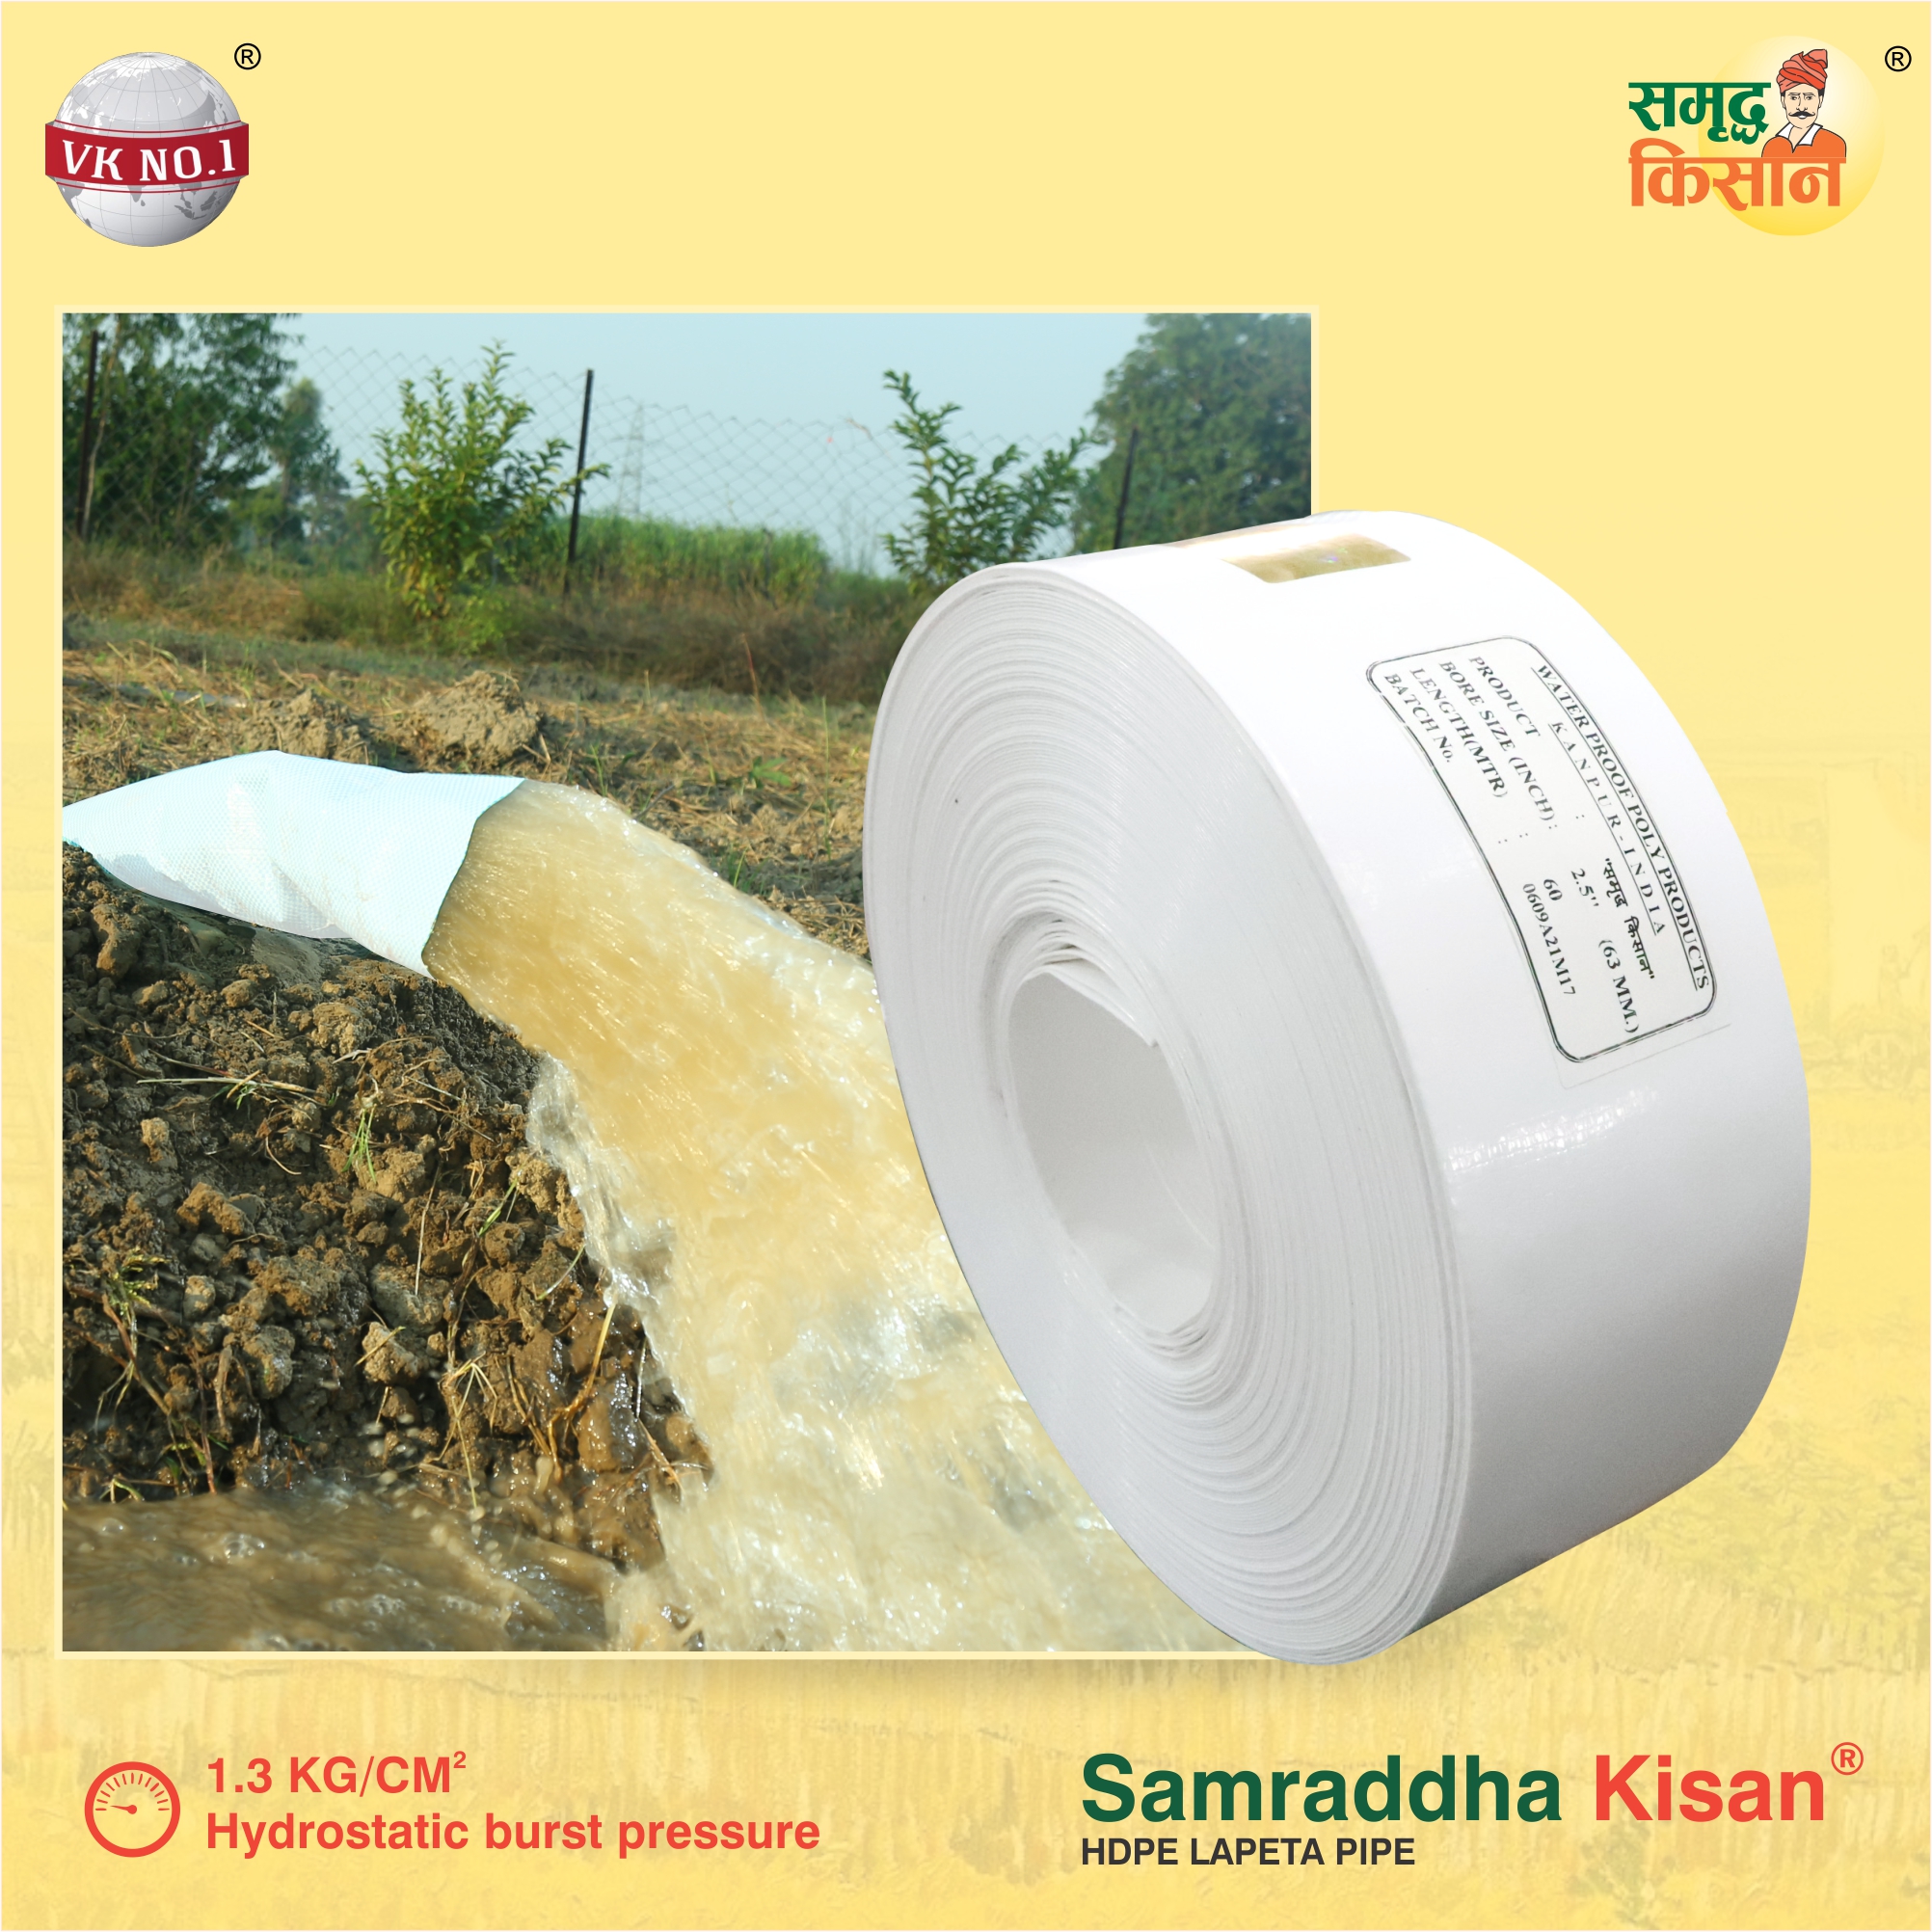 V.K. Samraddha Kisan HDPE Lapeta Pipe / Sinchai Pipe / Irrigation Pipe (90 Meter) 